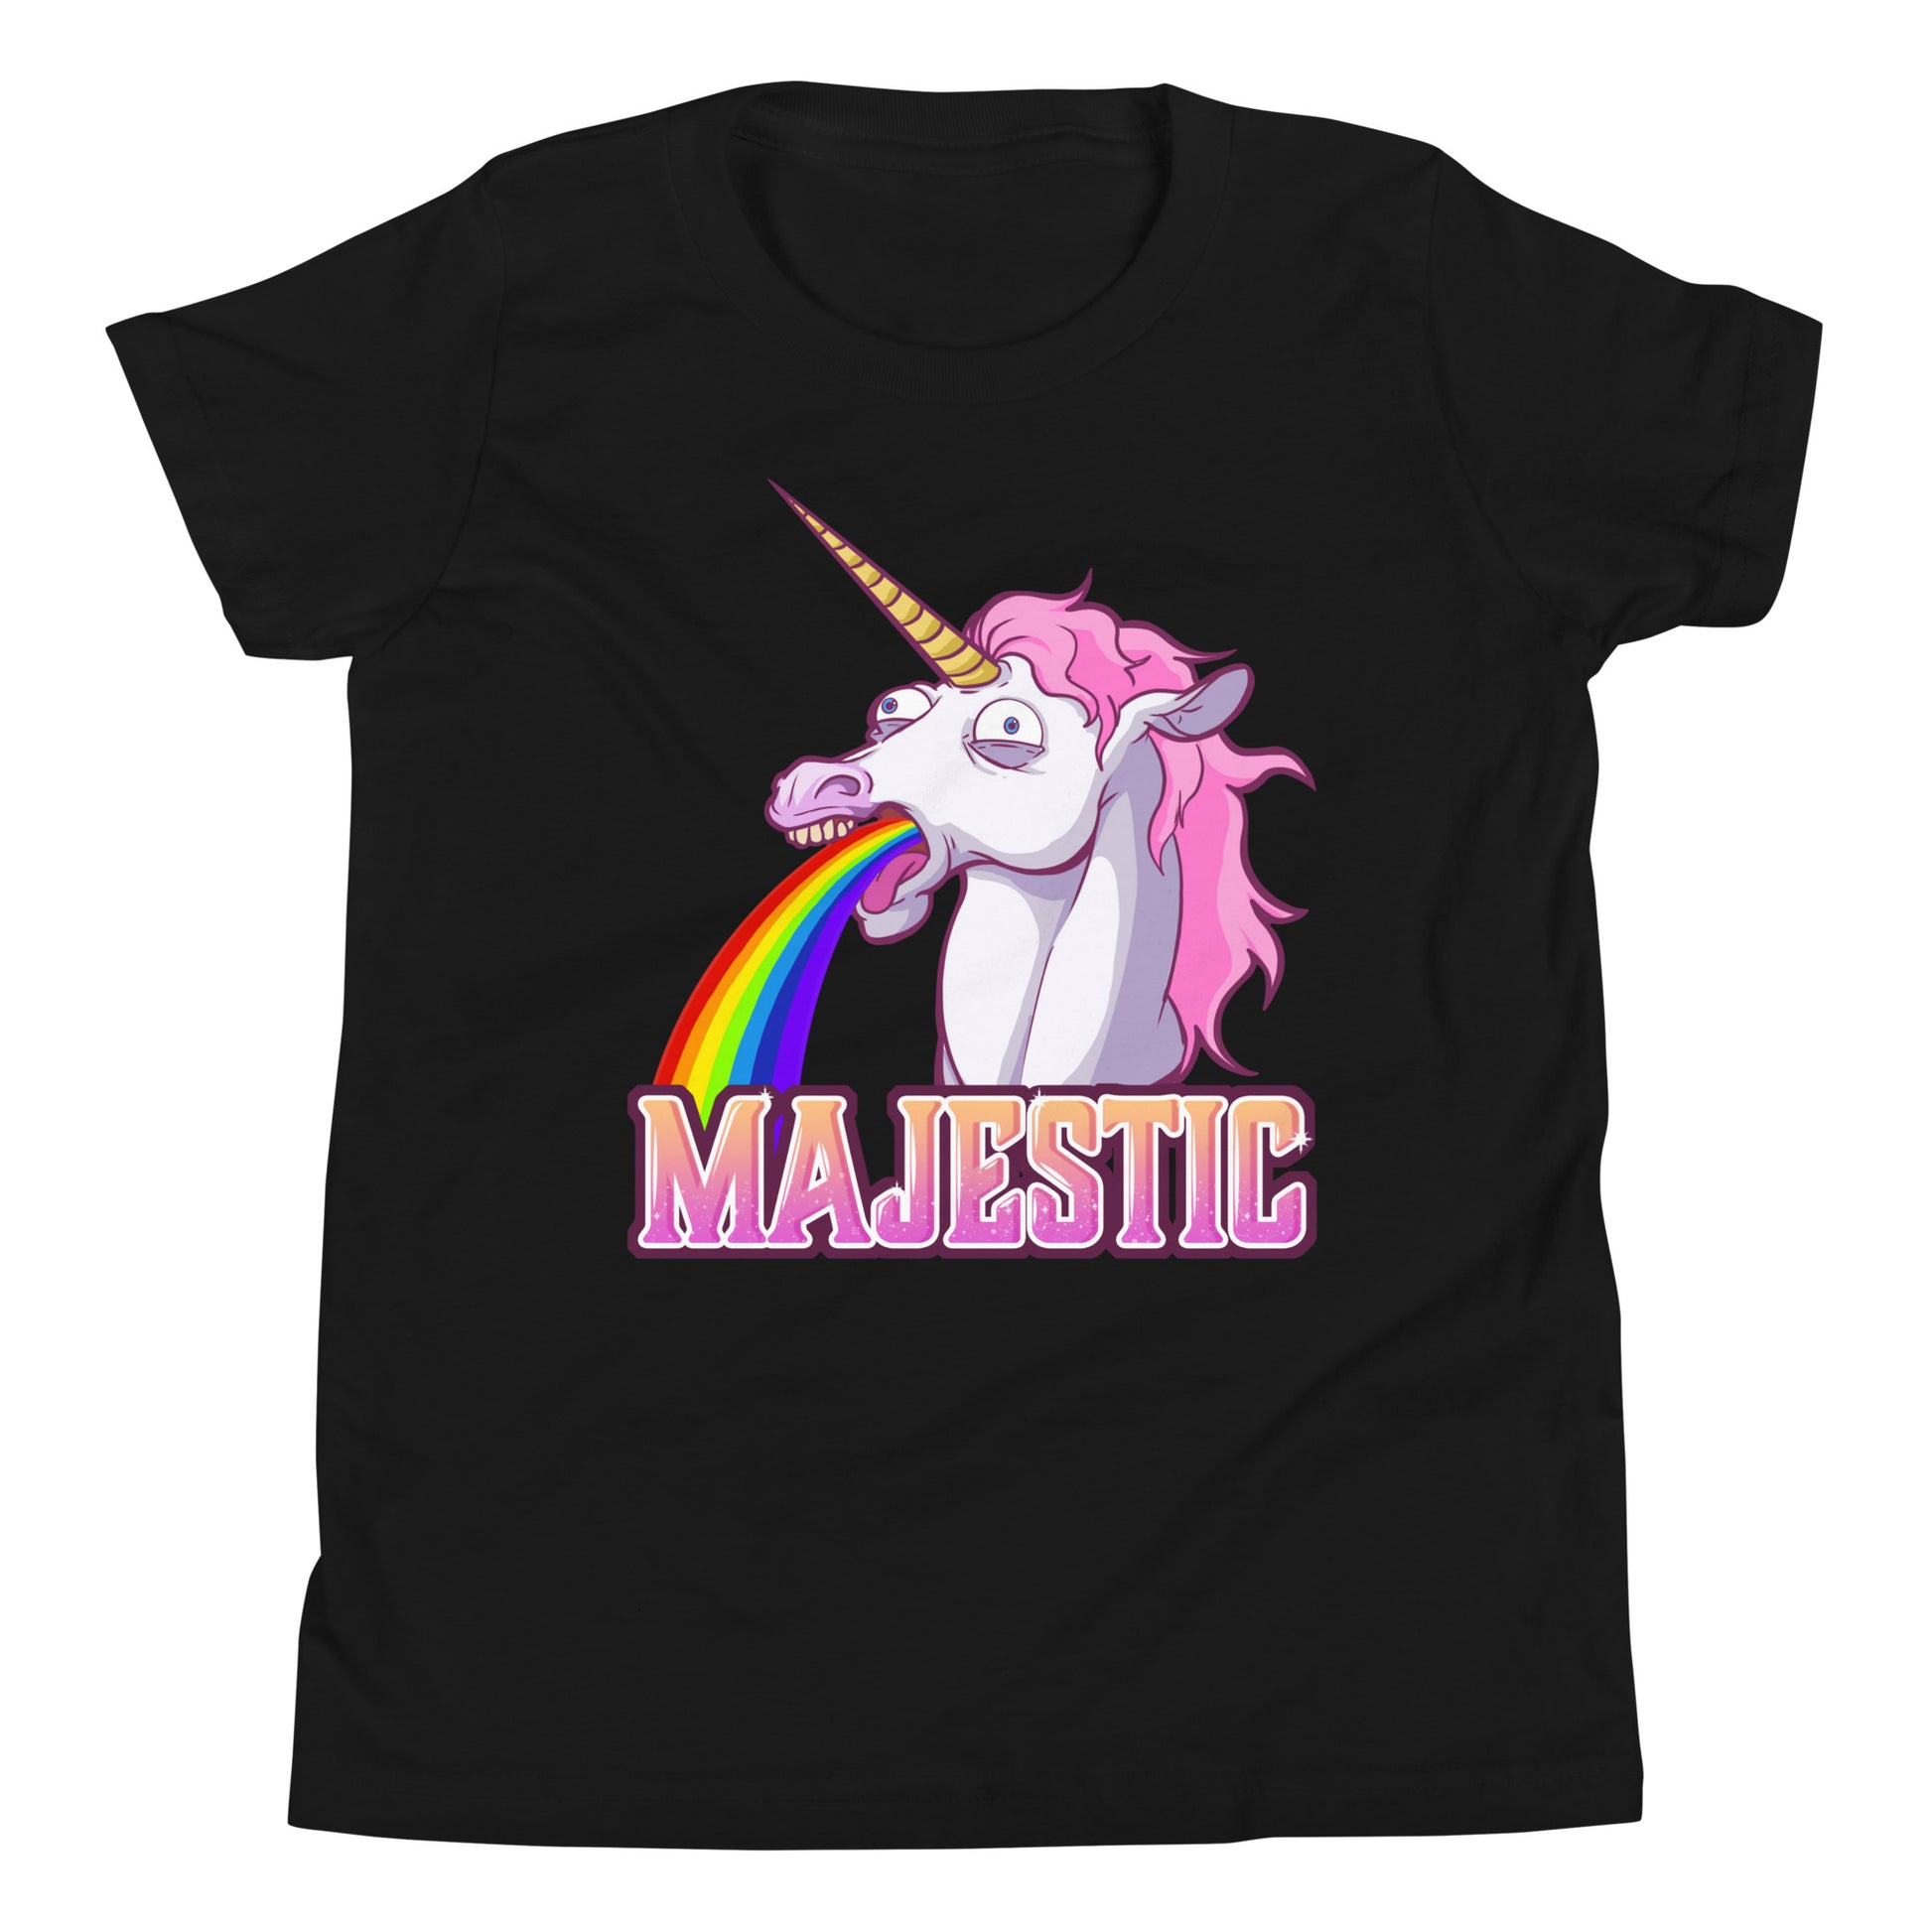 Majestic Unicorn Youth Short Sleeve T-Shirt  Level 1 Gamers Black S 